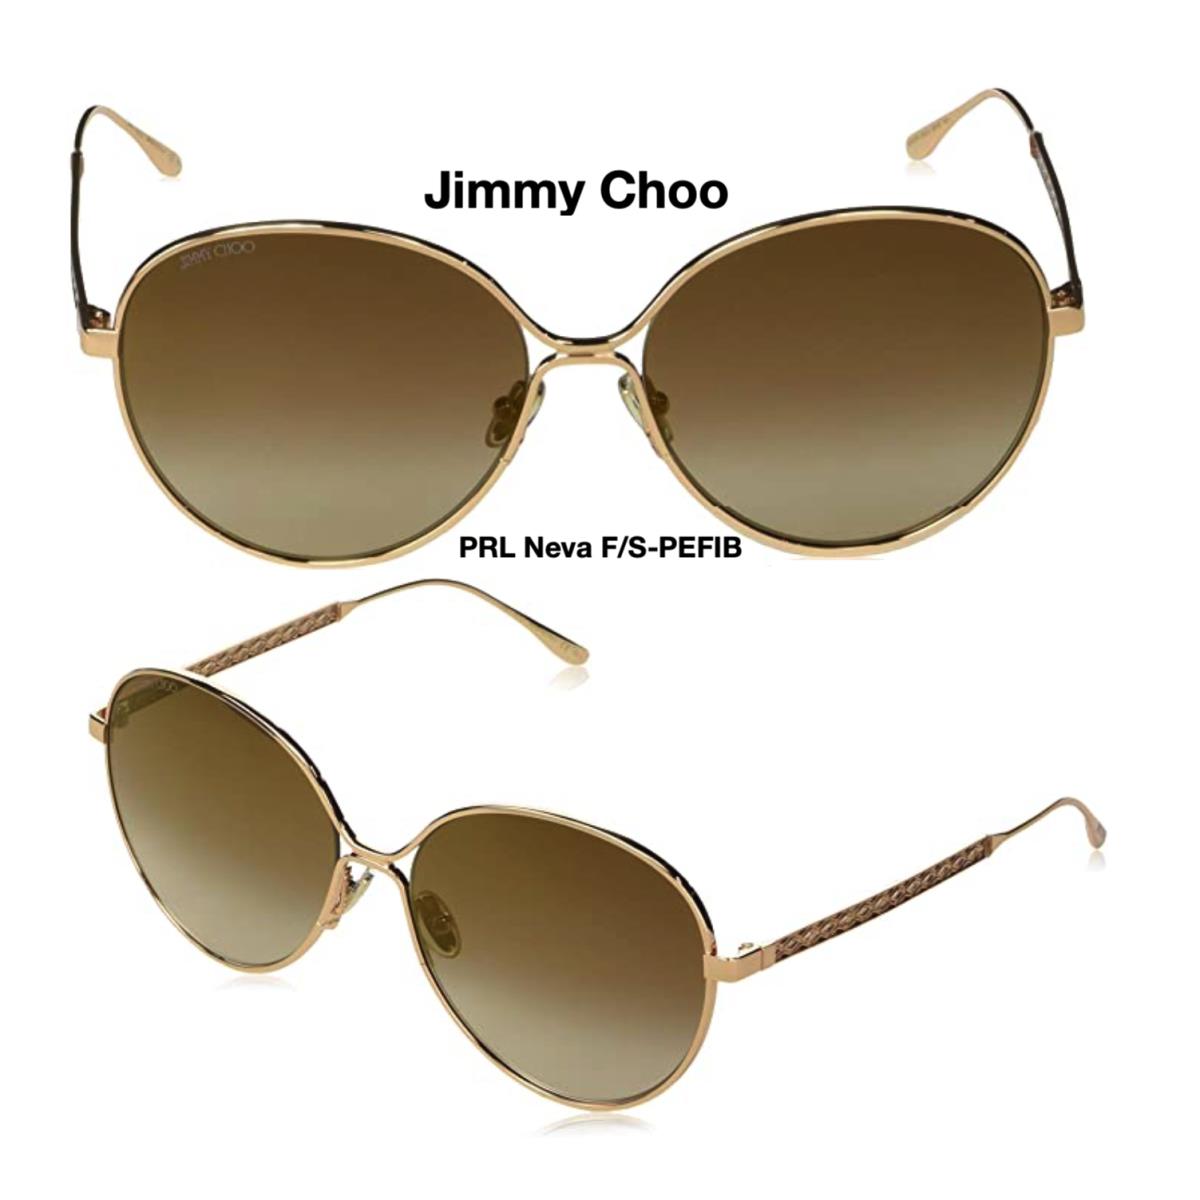 Jimmy Choo Neva F/s Pefib Sunglasses Gold Green/green Gradient 60mm